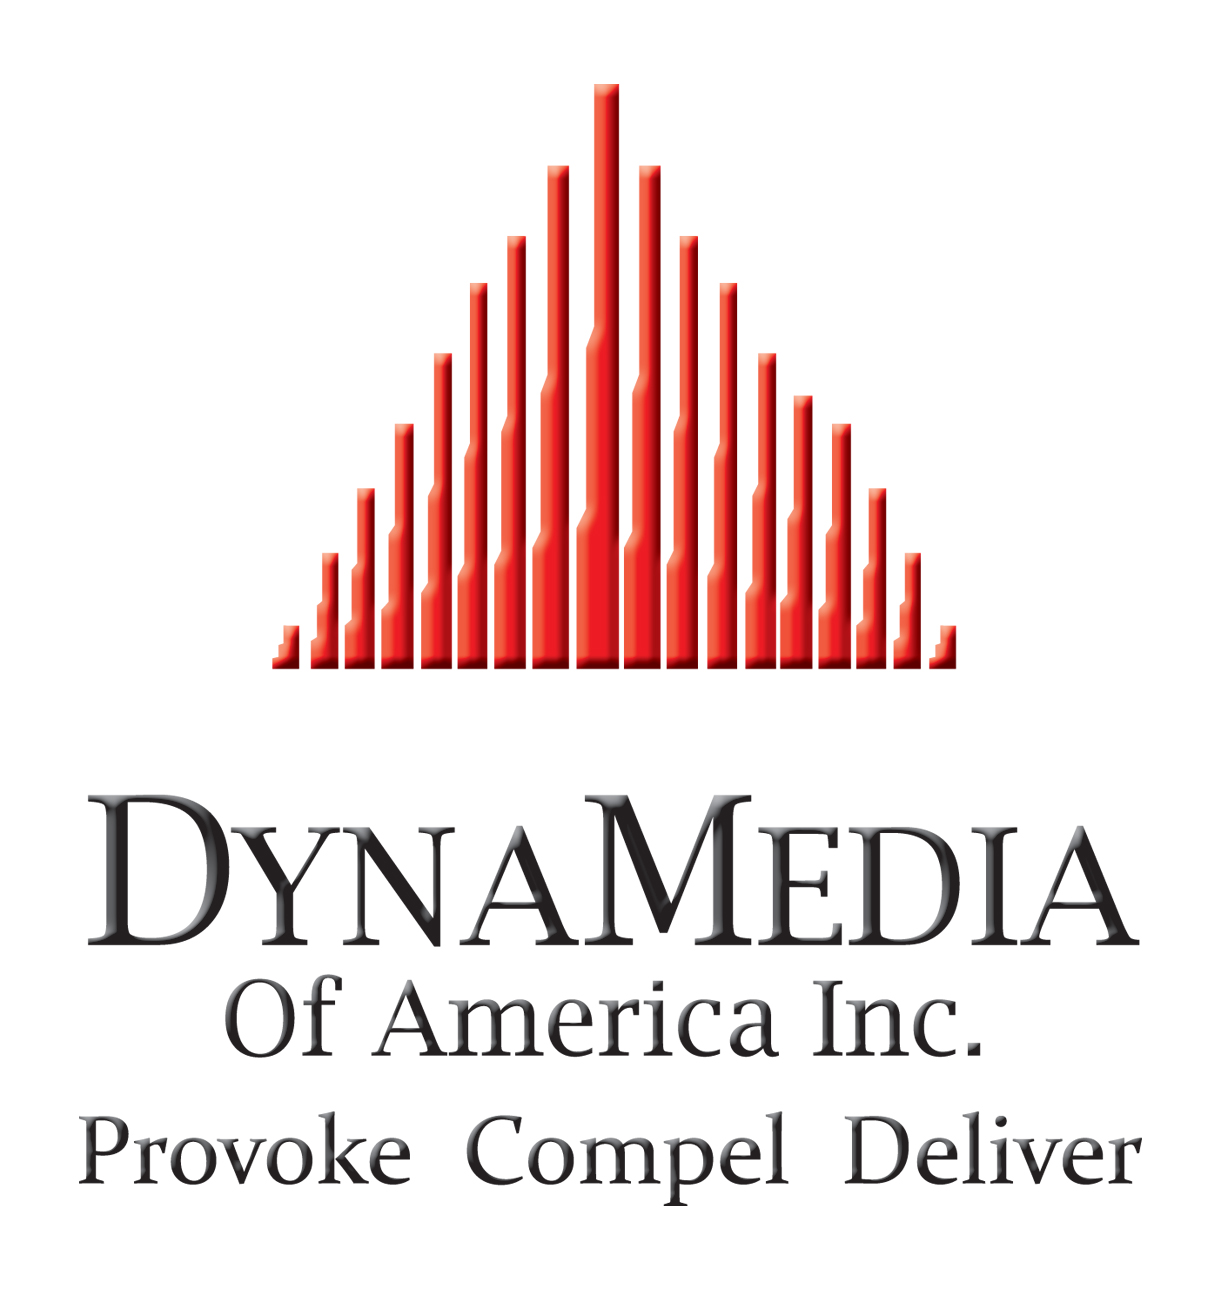 DynaMedia